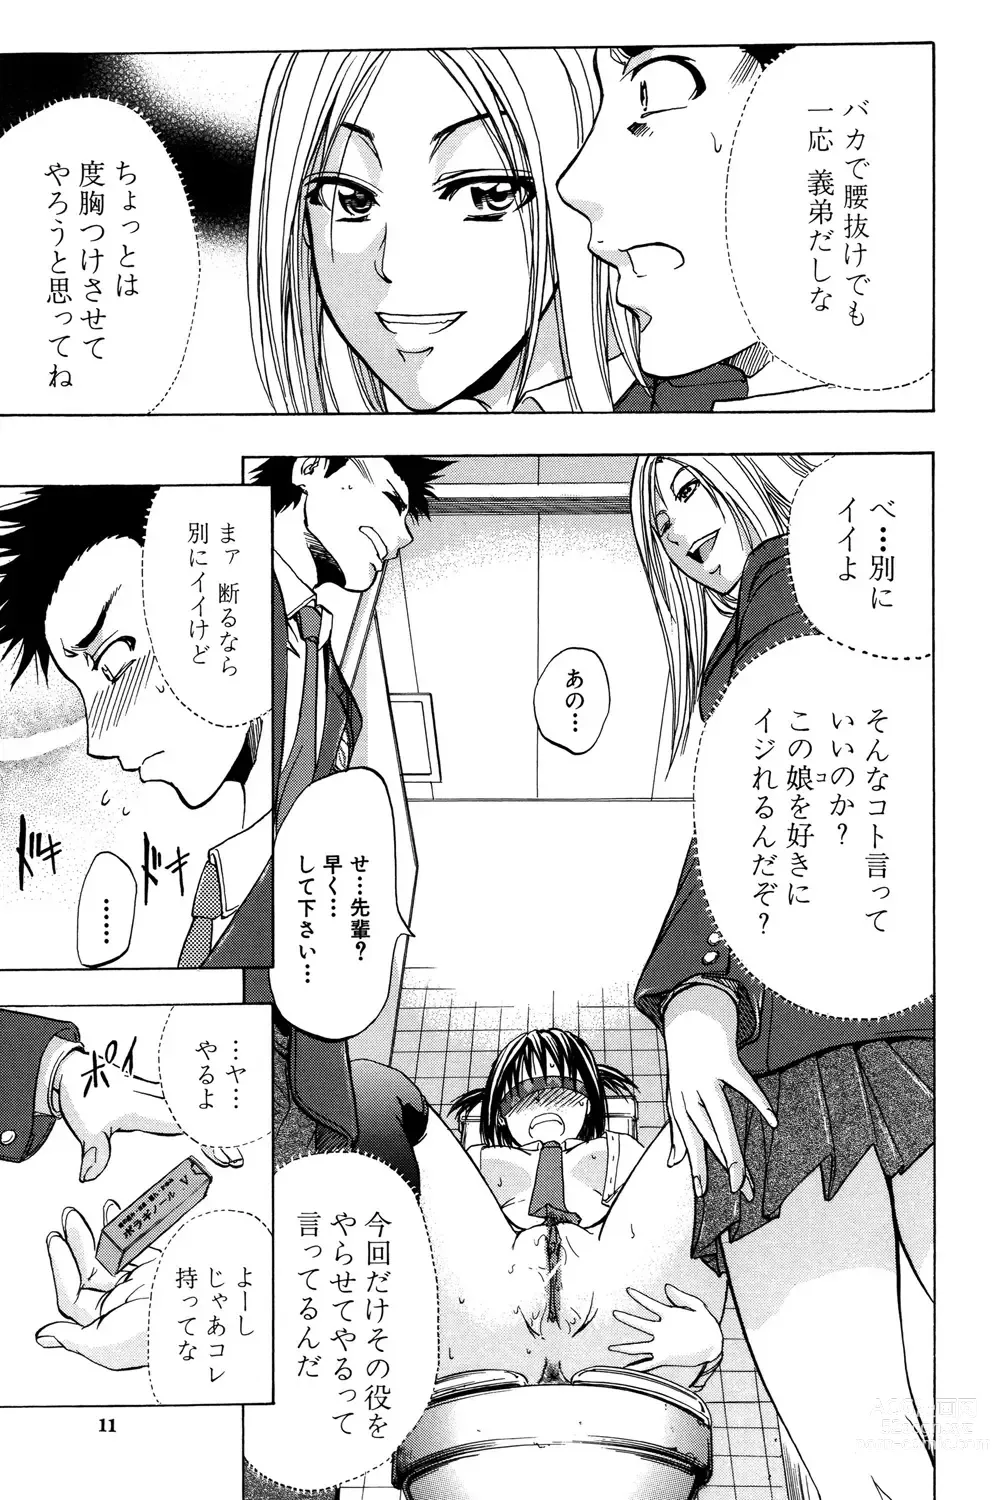 Page 12 of manga ANAL BACKER